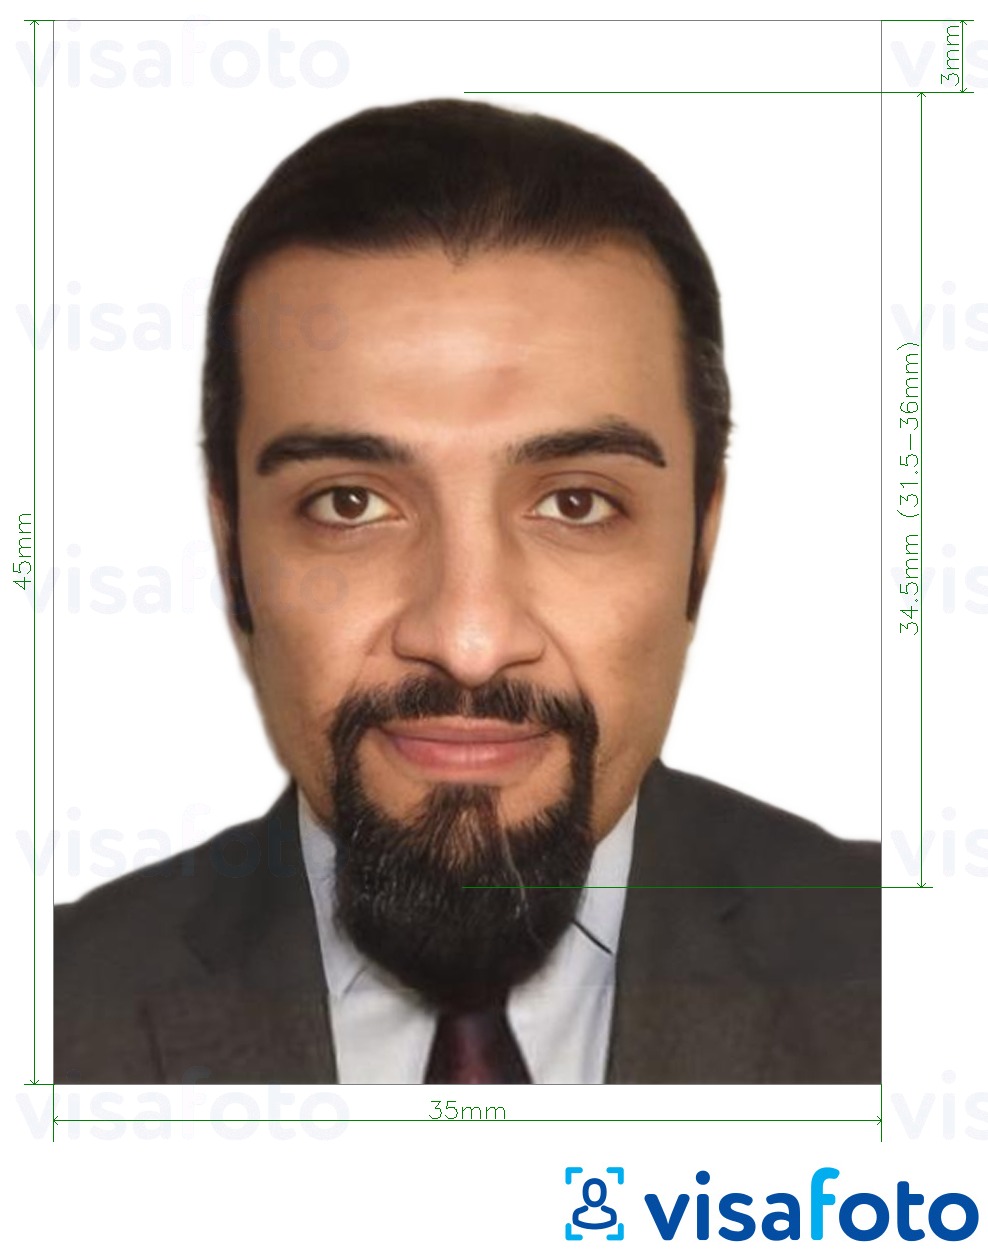 Exemple de foto per a Passaport Iraq 35x45 mm (3,5x4,5 cm) amb la mida exacta especificada